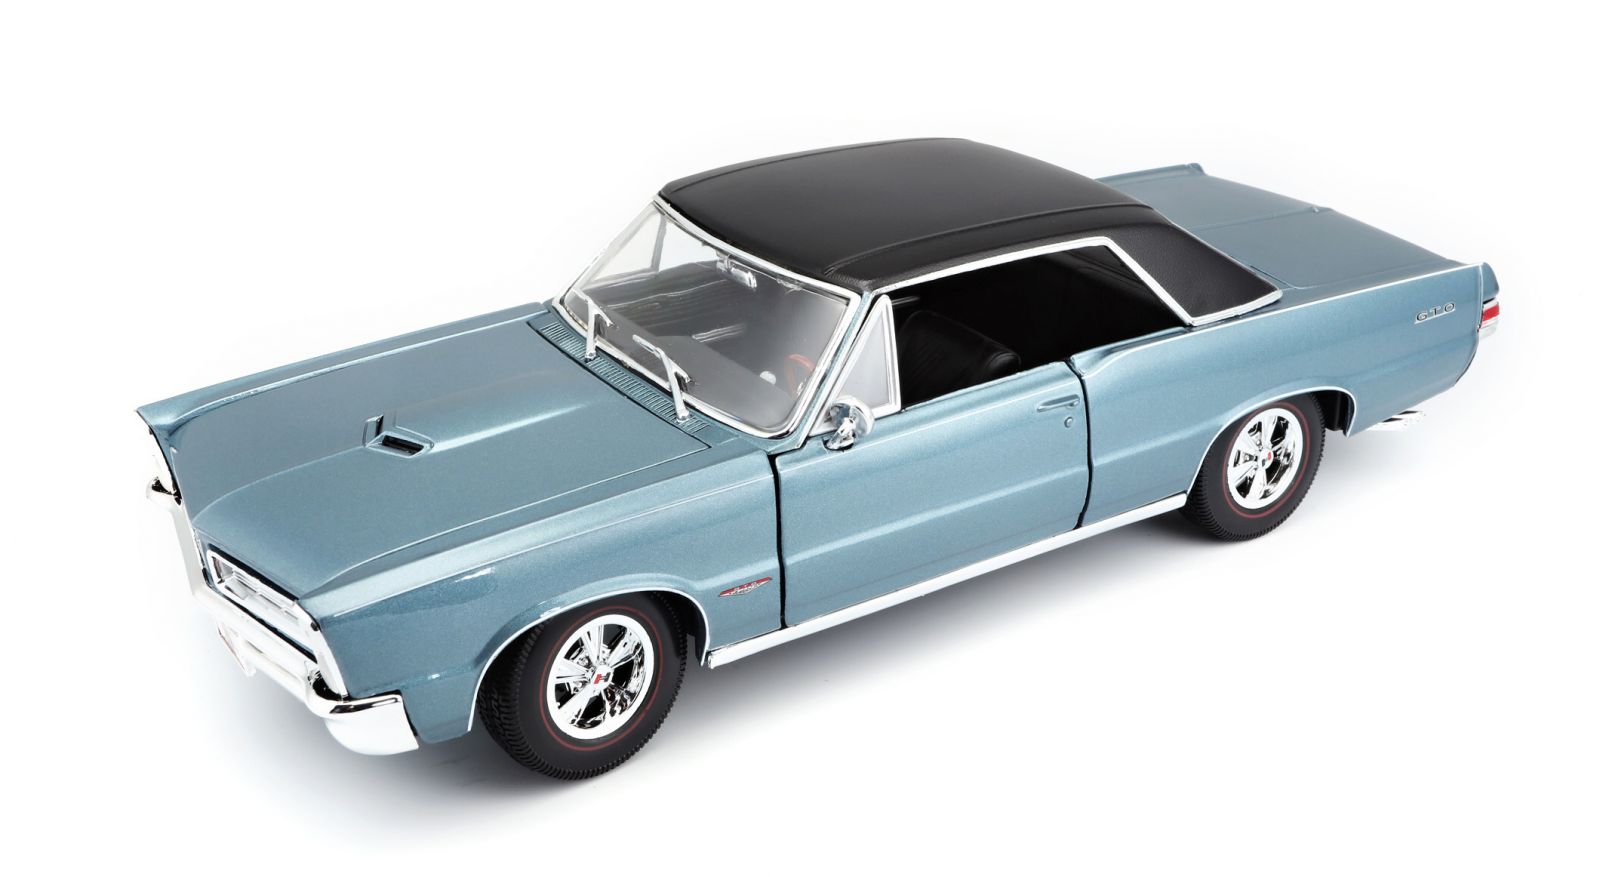 Maisto 1:18 Pontiac GTO 1965 - modrá barva